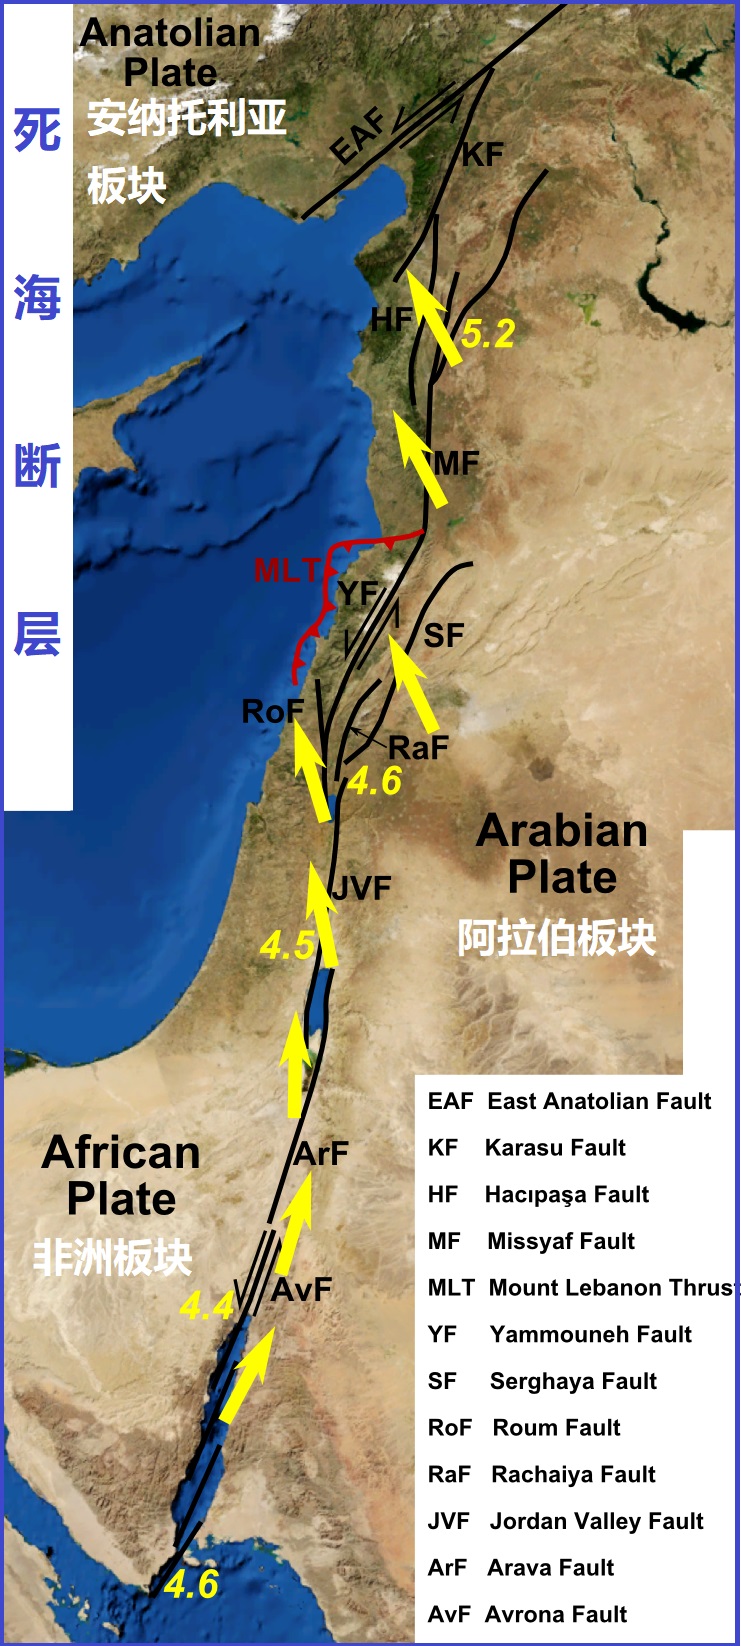 上图：死海断层（Dead Sea Transform），又称为死海裂谷（Dead Sea Rift），从西奈半岛南面的红海裂谷开始，沿着阿拉伯板块和非洲板块之间的板块边缘伸延，终点是土耳其东南部与东安纳托利亚断层交会的地方。图中标出了阿拉伯板块相对于非洲板块的主要断层和运动方向，约旦河东的戈兰高地和基列地位于阿拉伯板块，约旦河西的加利利、撒马利亚、犹大、沿海平原、南地旷野和西奈半岛都在非洲板块上。这种构造，导致该地区相对频繁的地震活动。